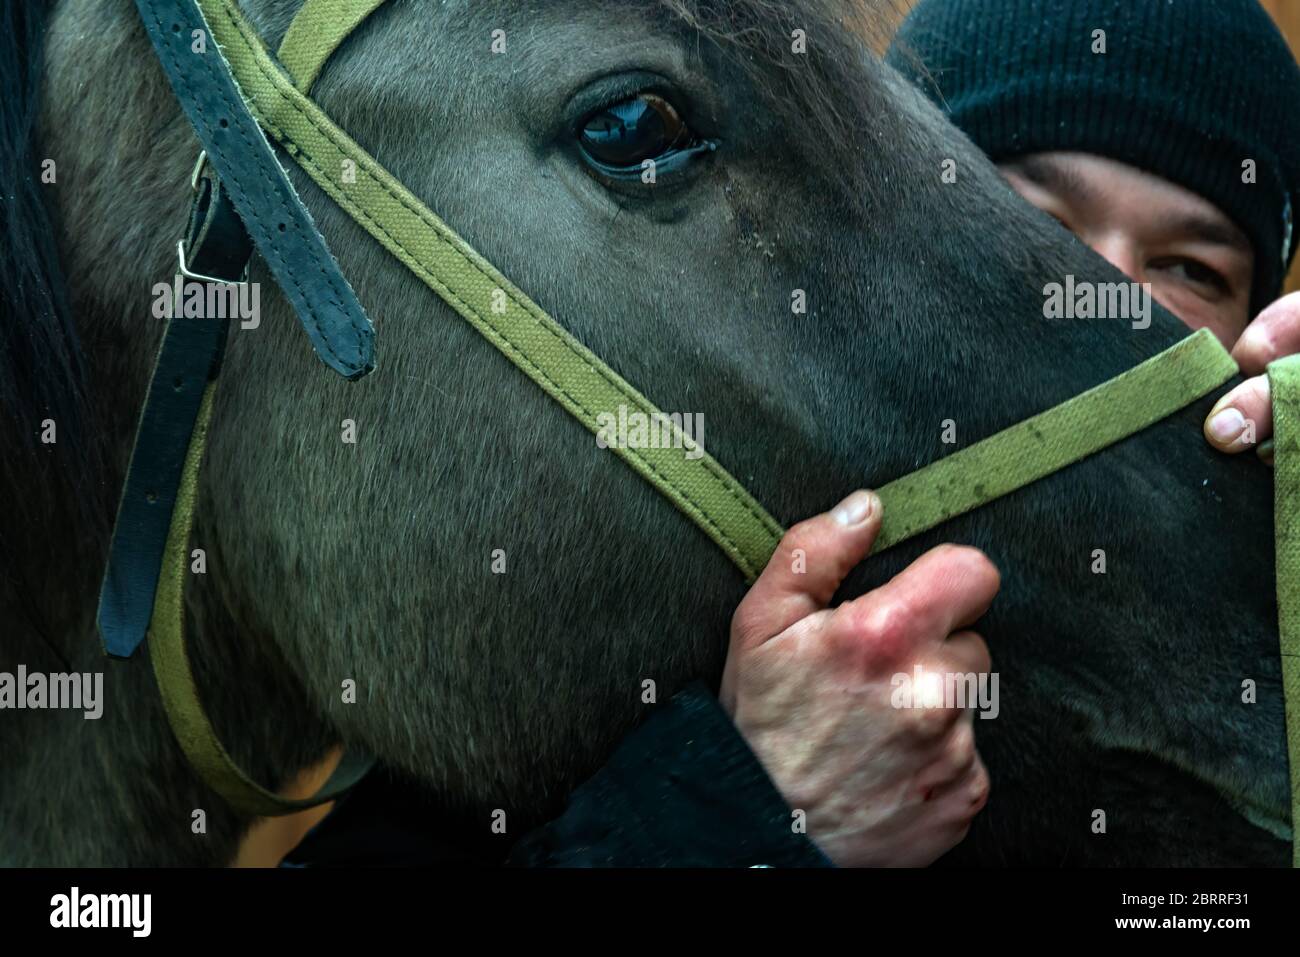 cavallo e fantino. Giovane fantino e i suoi cavalli. Amore animale. Amore cavallo. Bel cavallo. Cavallo Bashkir, Curlie Bashkir a Ufa, Bashkortostan, Russia. Foto Stock